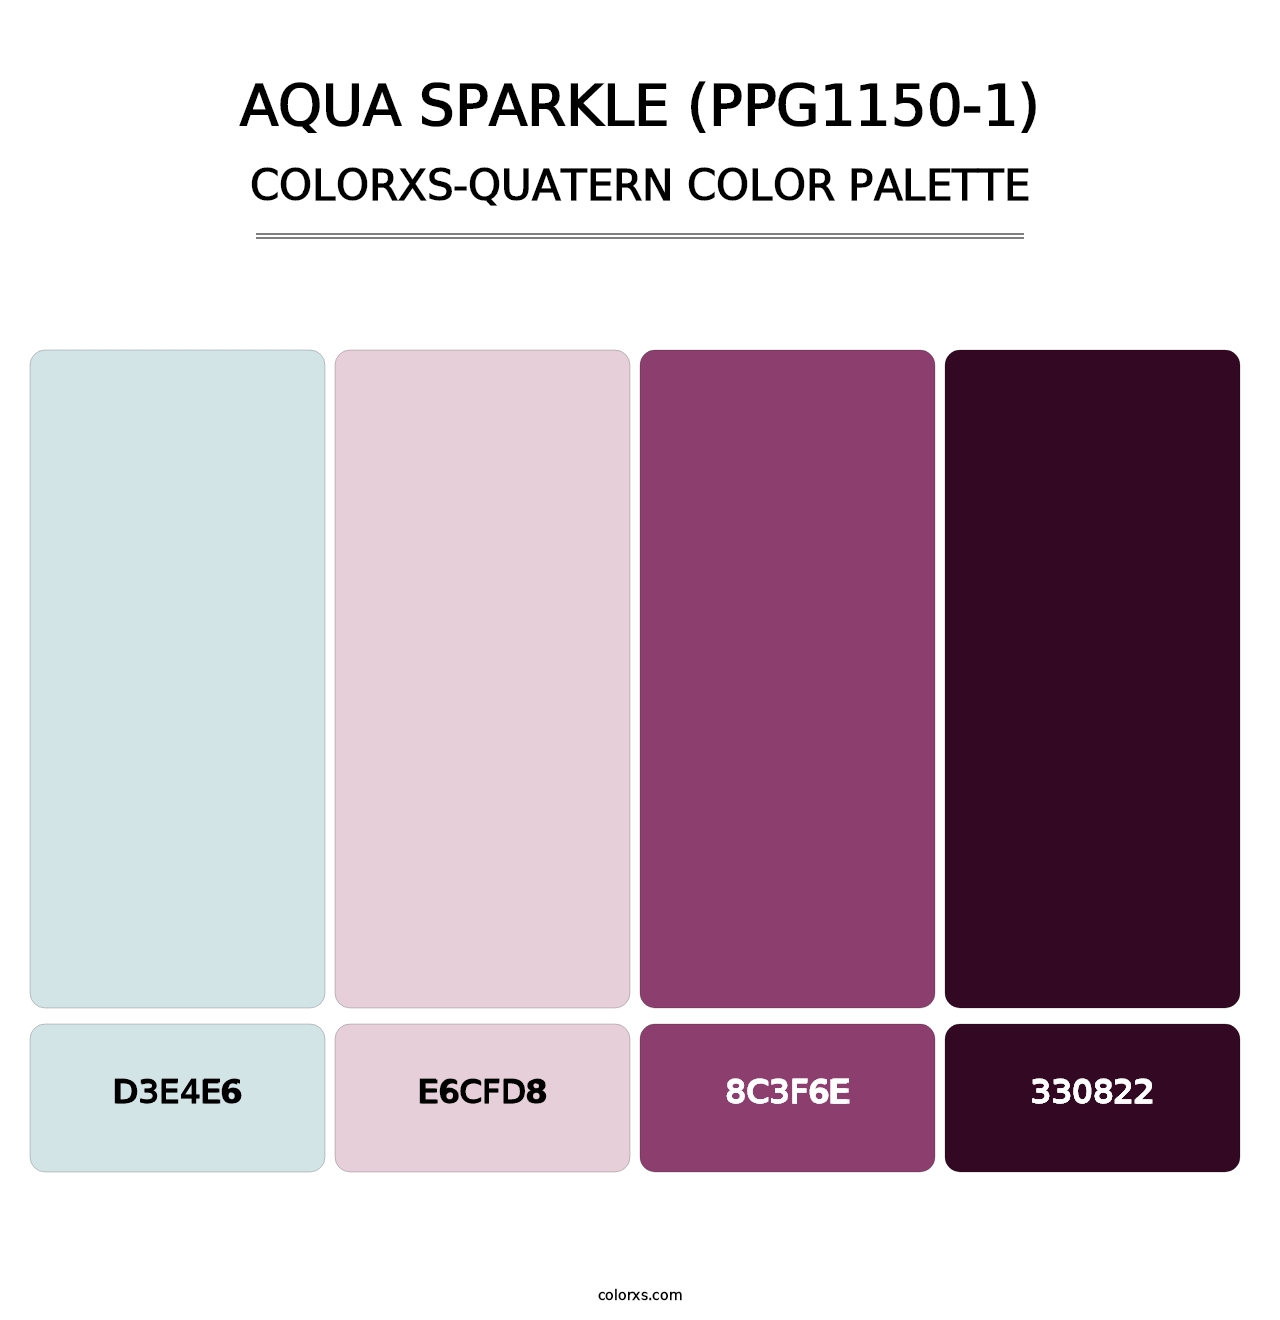 Aqua Sparkle (PPG1150-1) - Colorxs Quatern Palette